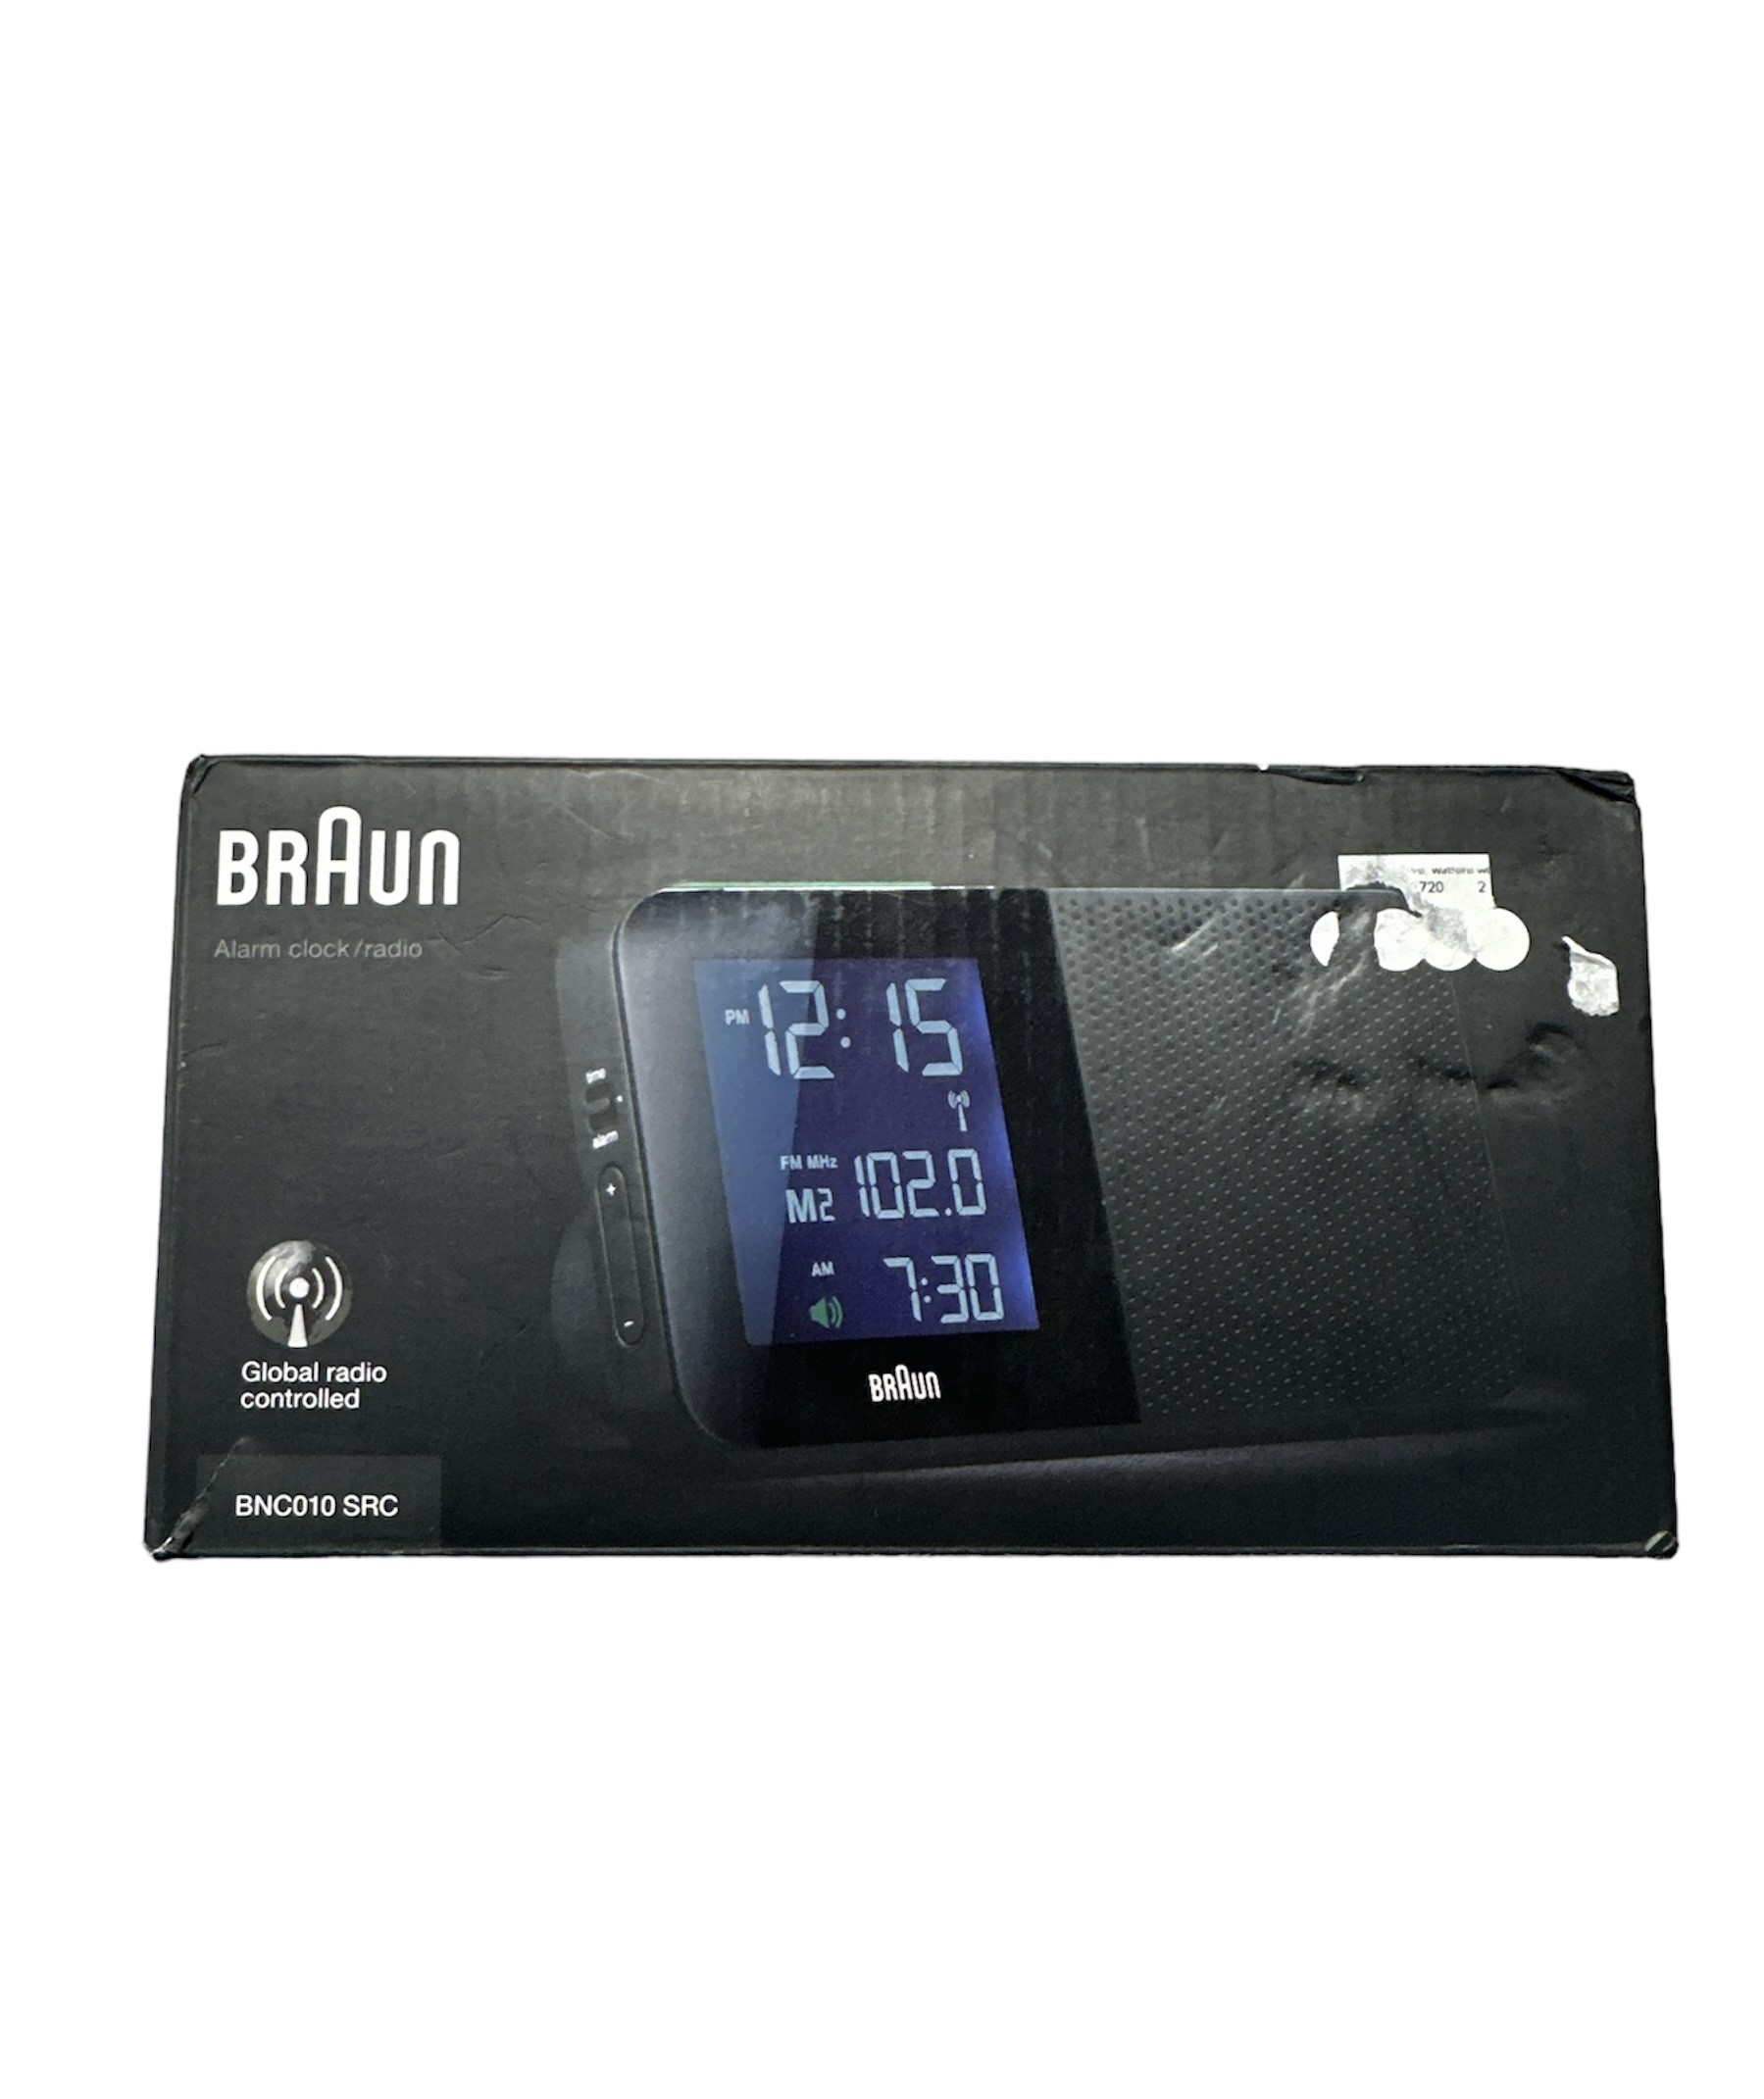 Braun Alarm Clock Radio, As New